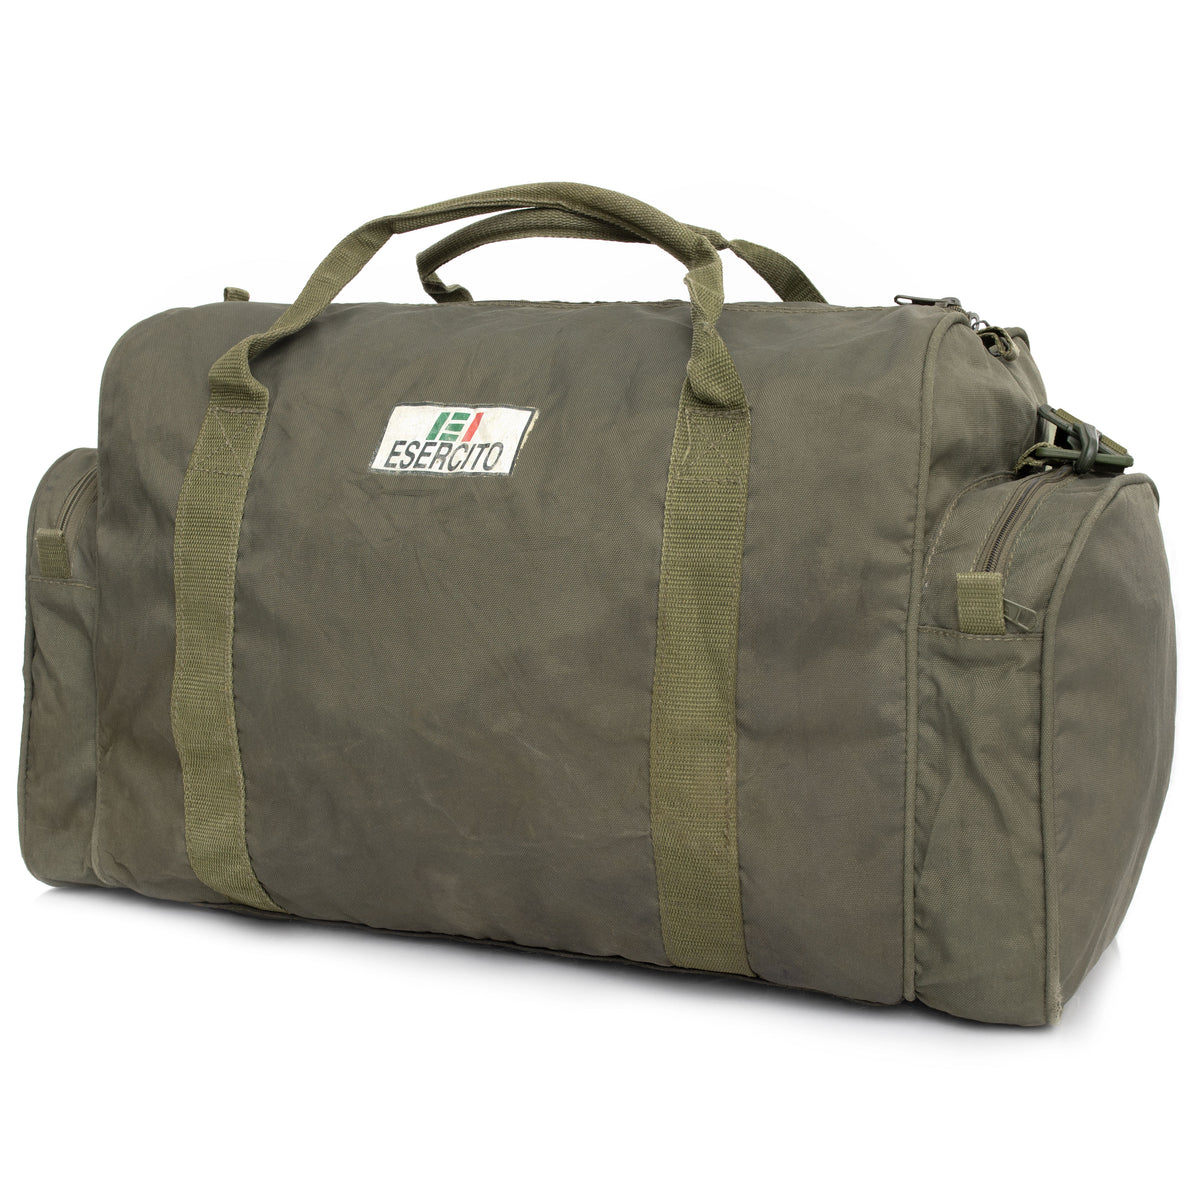 Italian Small ESERCITO Duffle Bag | Used